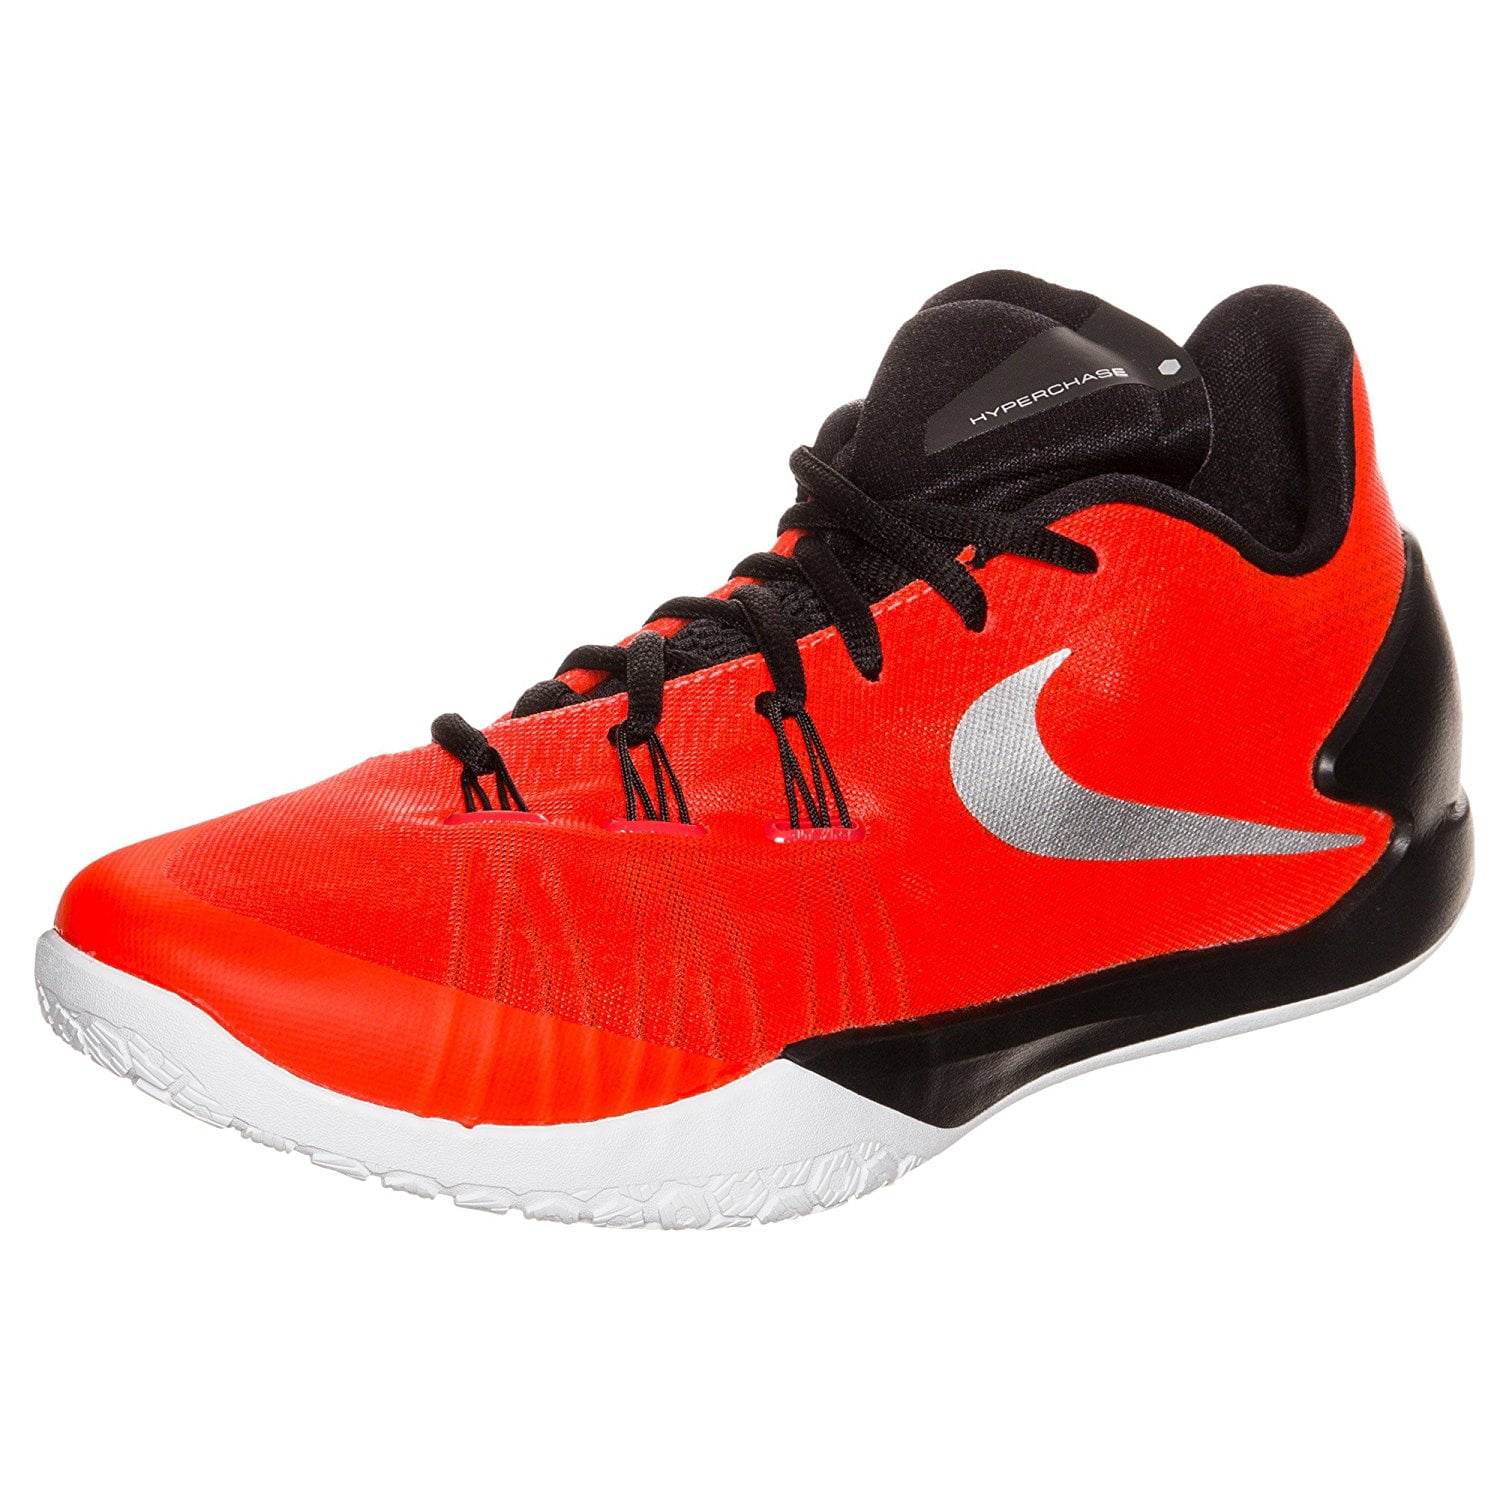 Nike HyperChase Men's Basketball Shoes - Walmart.com